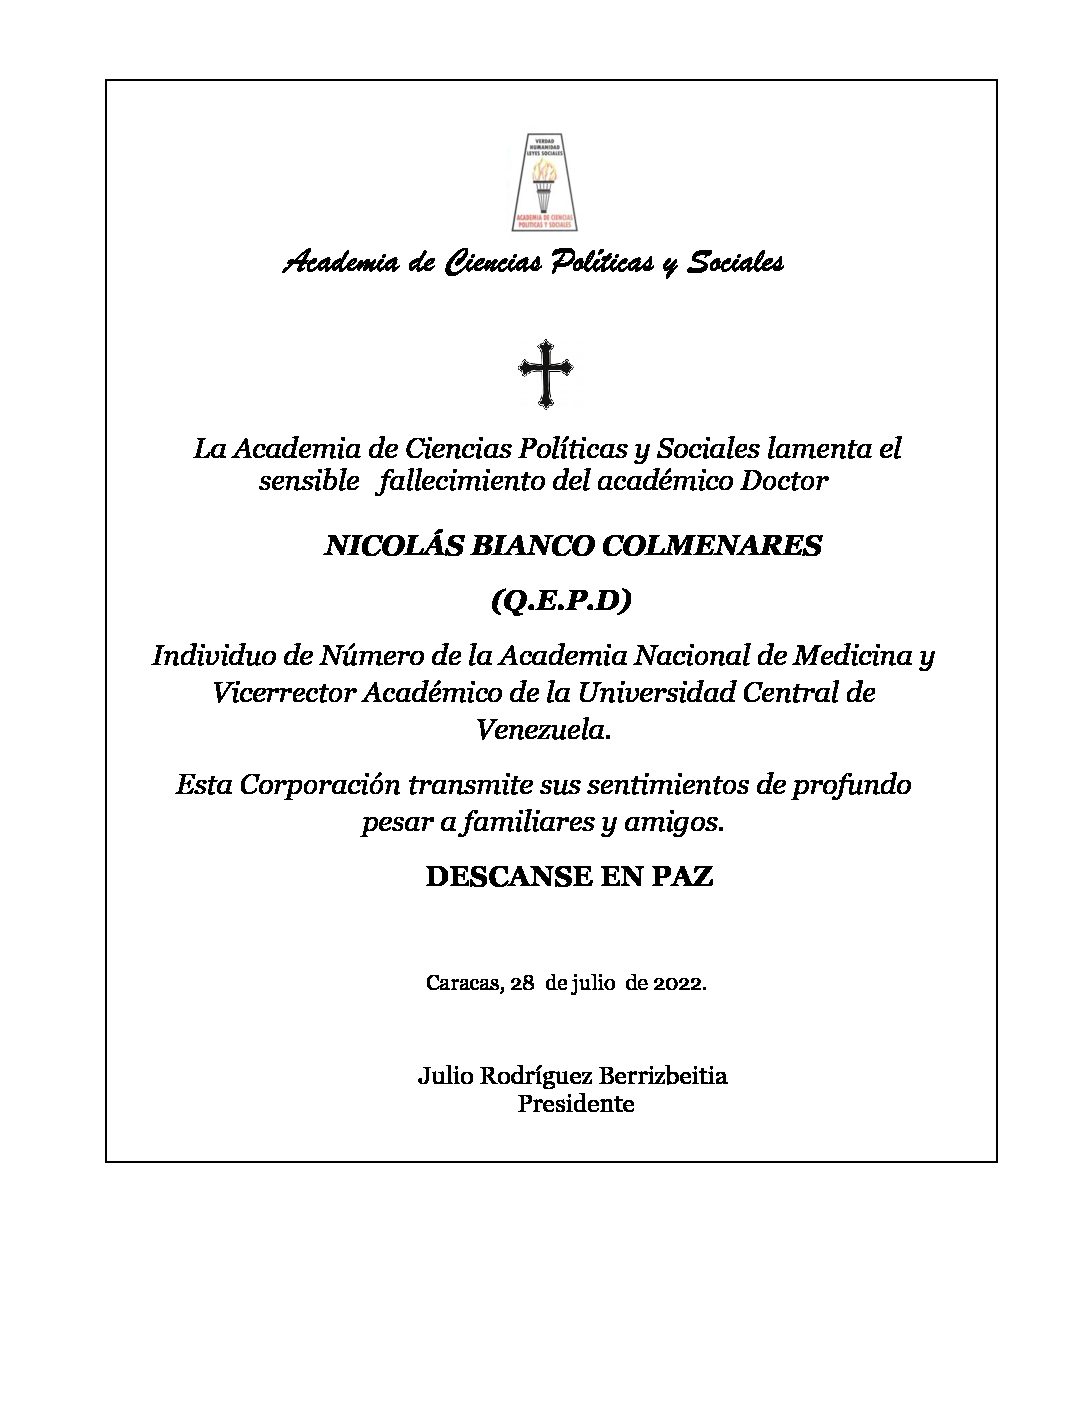 Nota de pesar de la Academia de Ciencias Políticas y Sociales por el sensible fallecimiento del académico Doctor NICOLÁS BIANCO COLMENARES